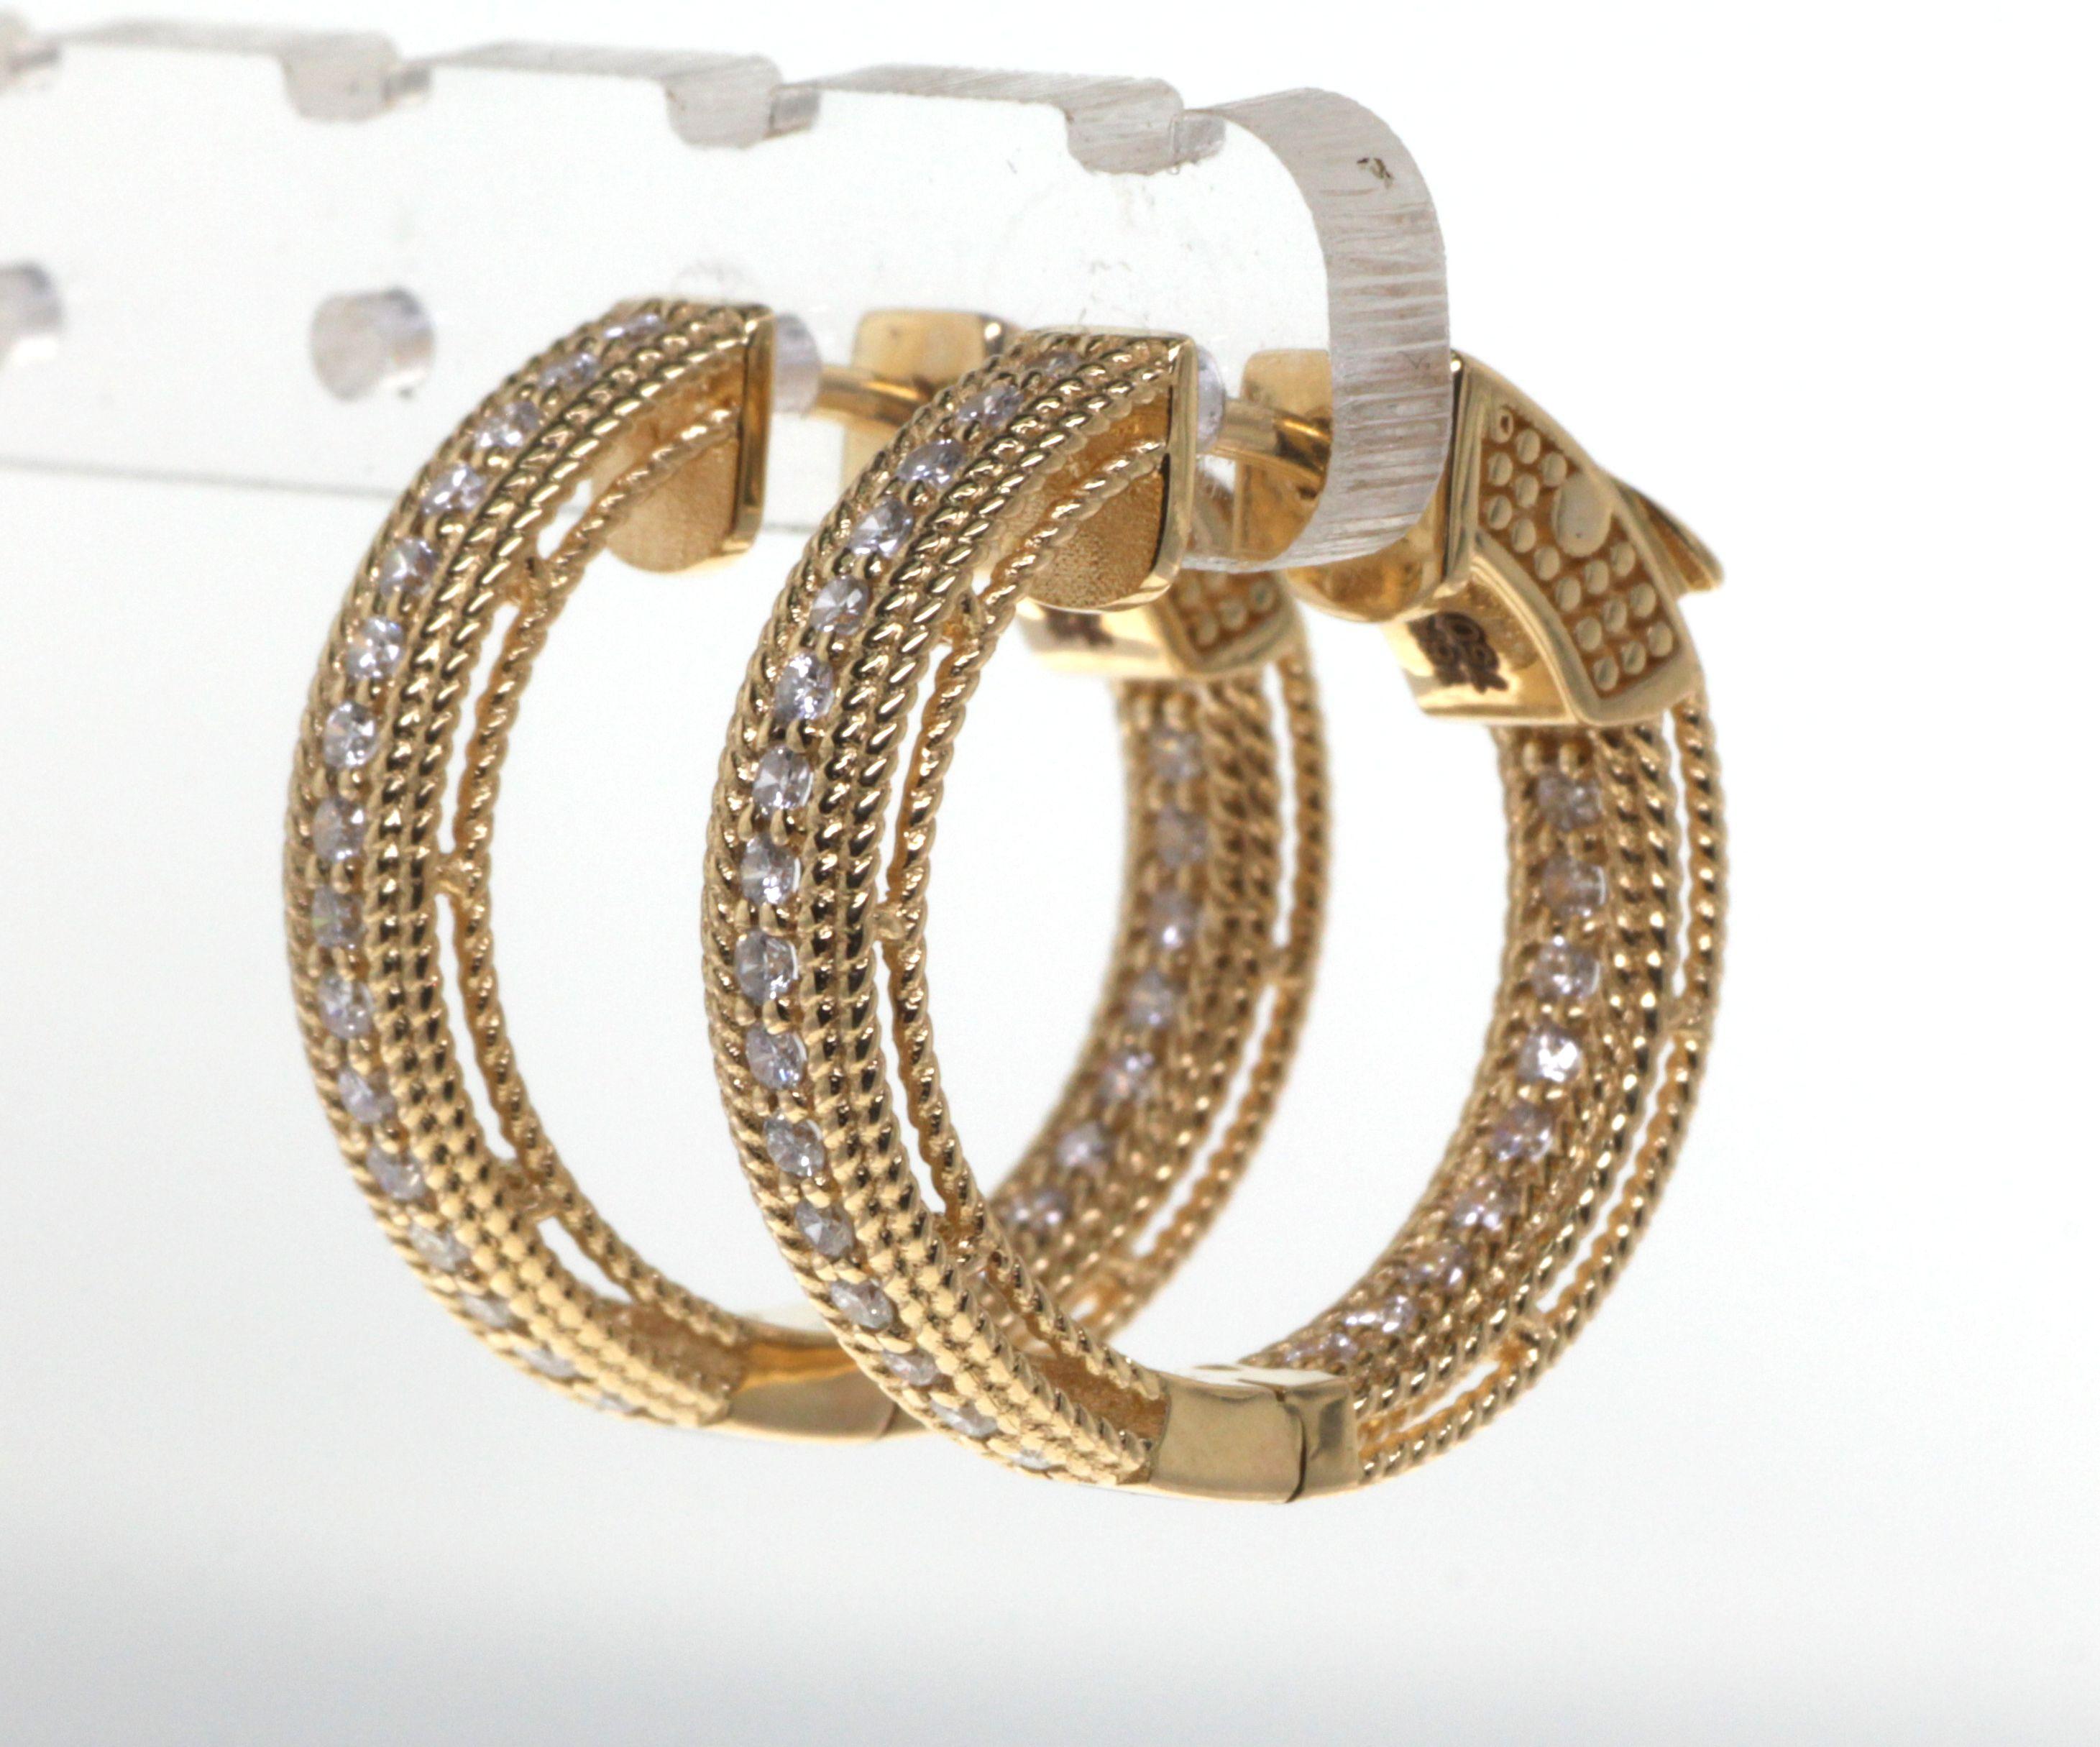 0.50 Carat Diamond Hoop Earrings in 18K Yellow Gold 1